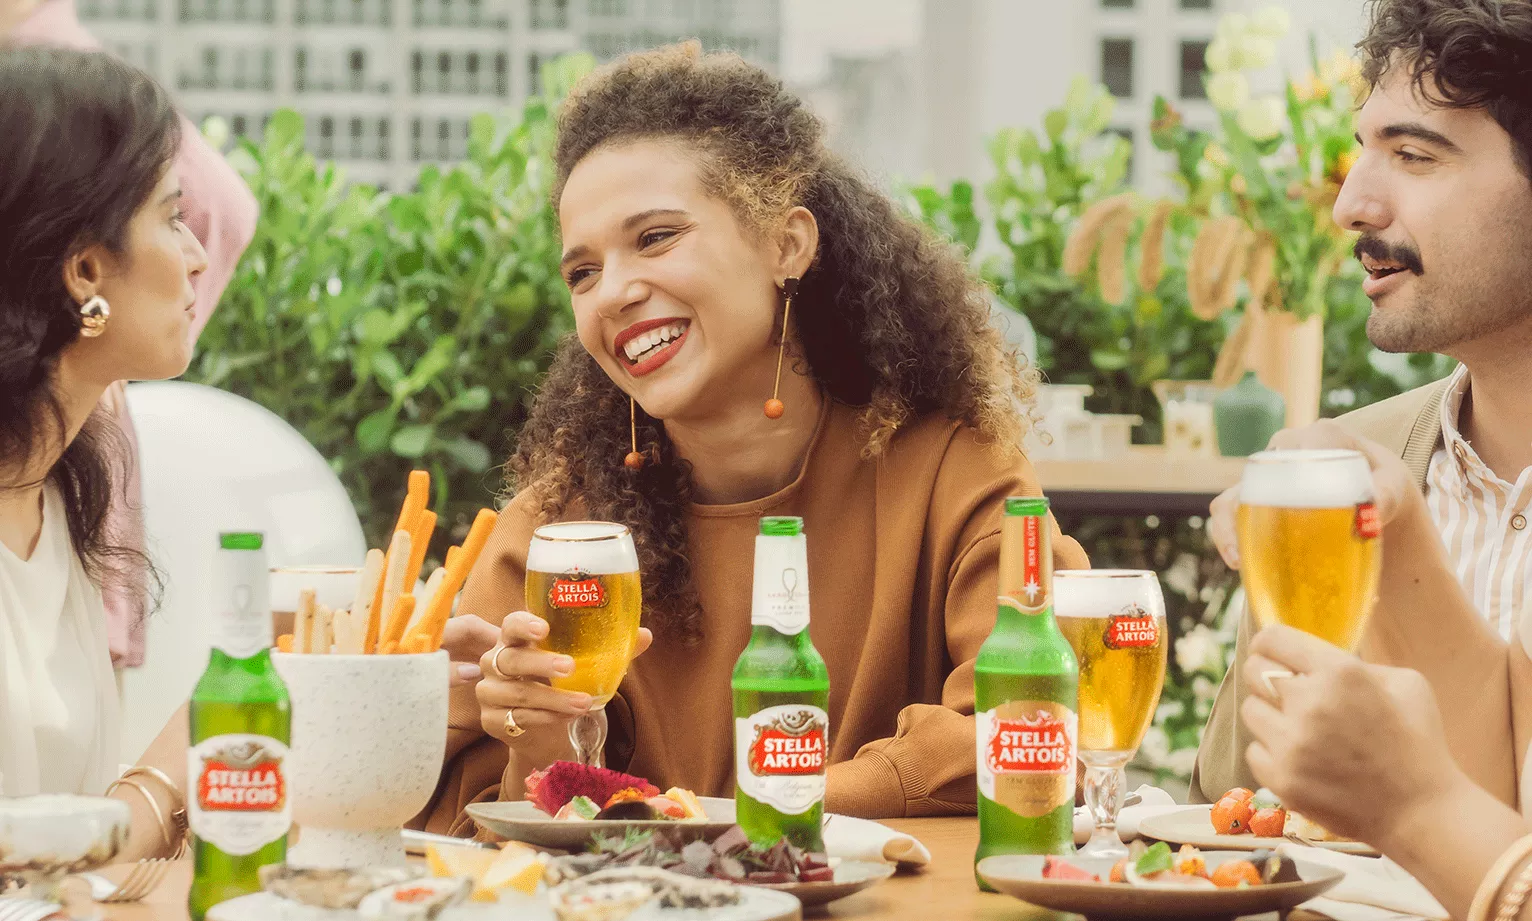 Imagem de Pessoas Almoçando e uma Garrafa de Stella Artois ao Meio.